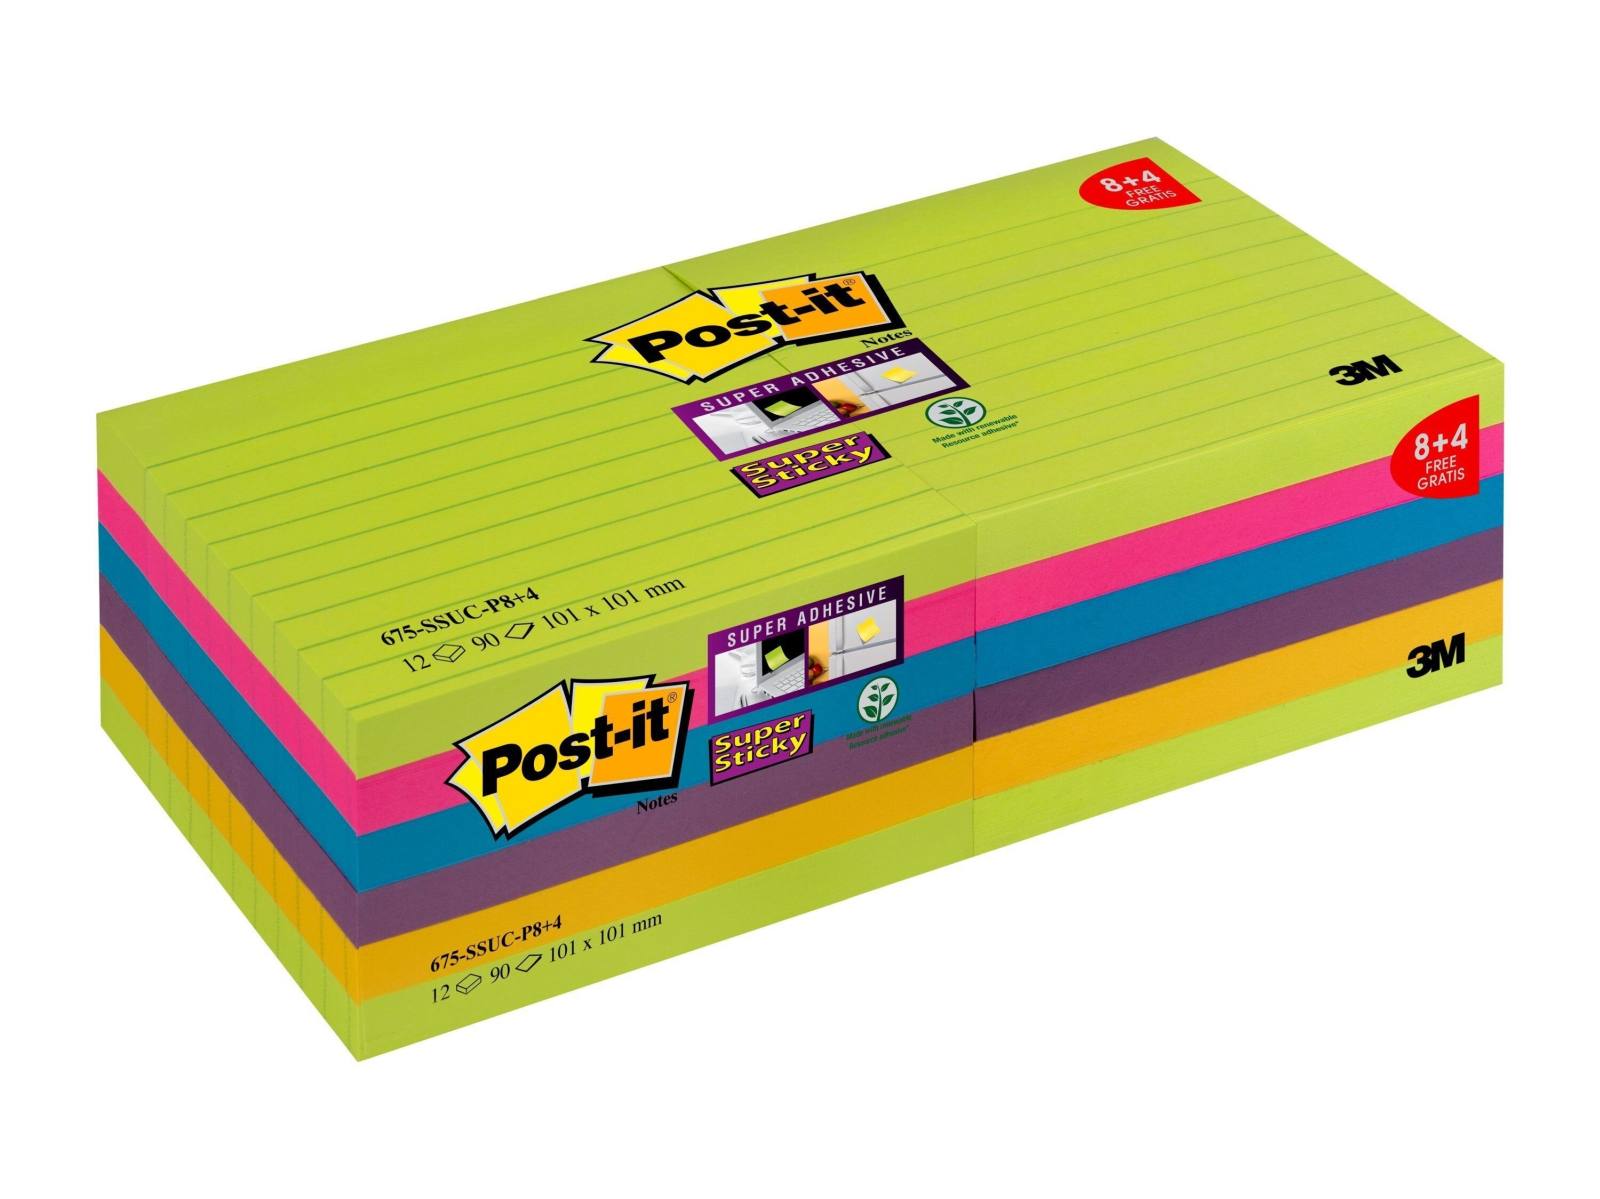 3M Post-it Super Sticky Notes Promotion 675-SSUC-P8+4 12 blocs de 90 feuilles à prix avantageux, vert fluo, ultra rose, -bleu, violet prune, ultra jaune, 101 mm x 101 mm, ligné, certifié PEFC